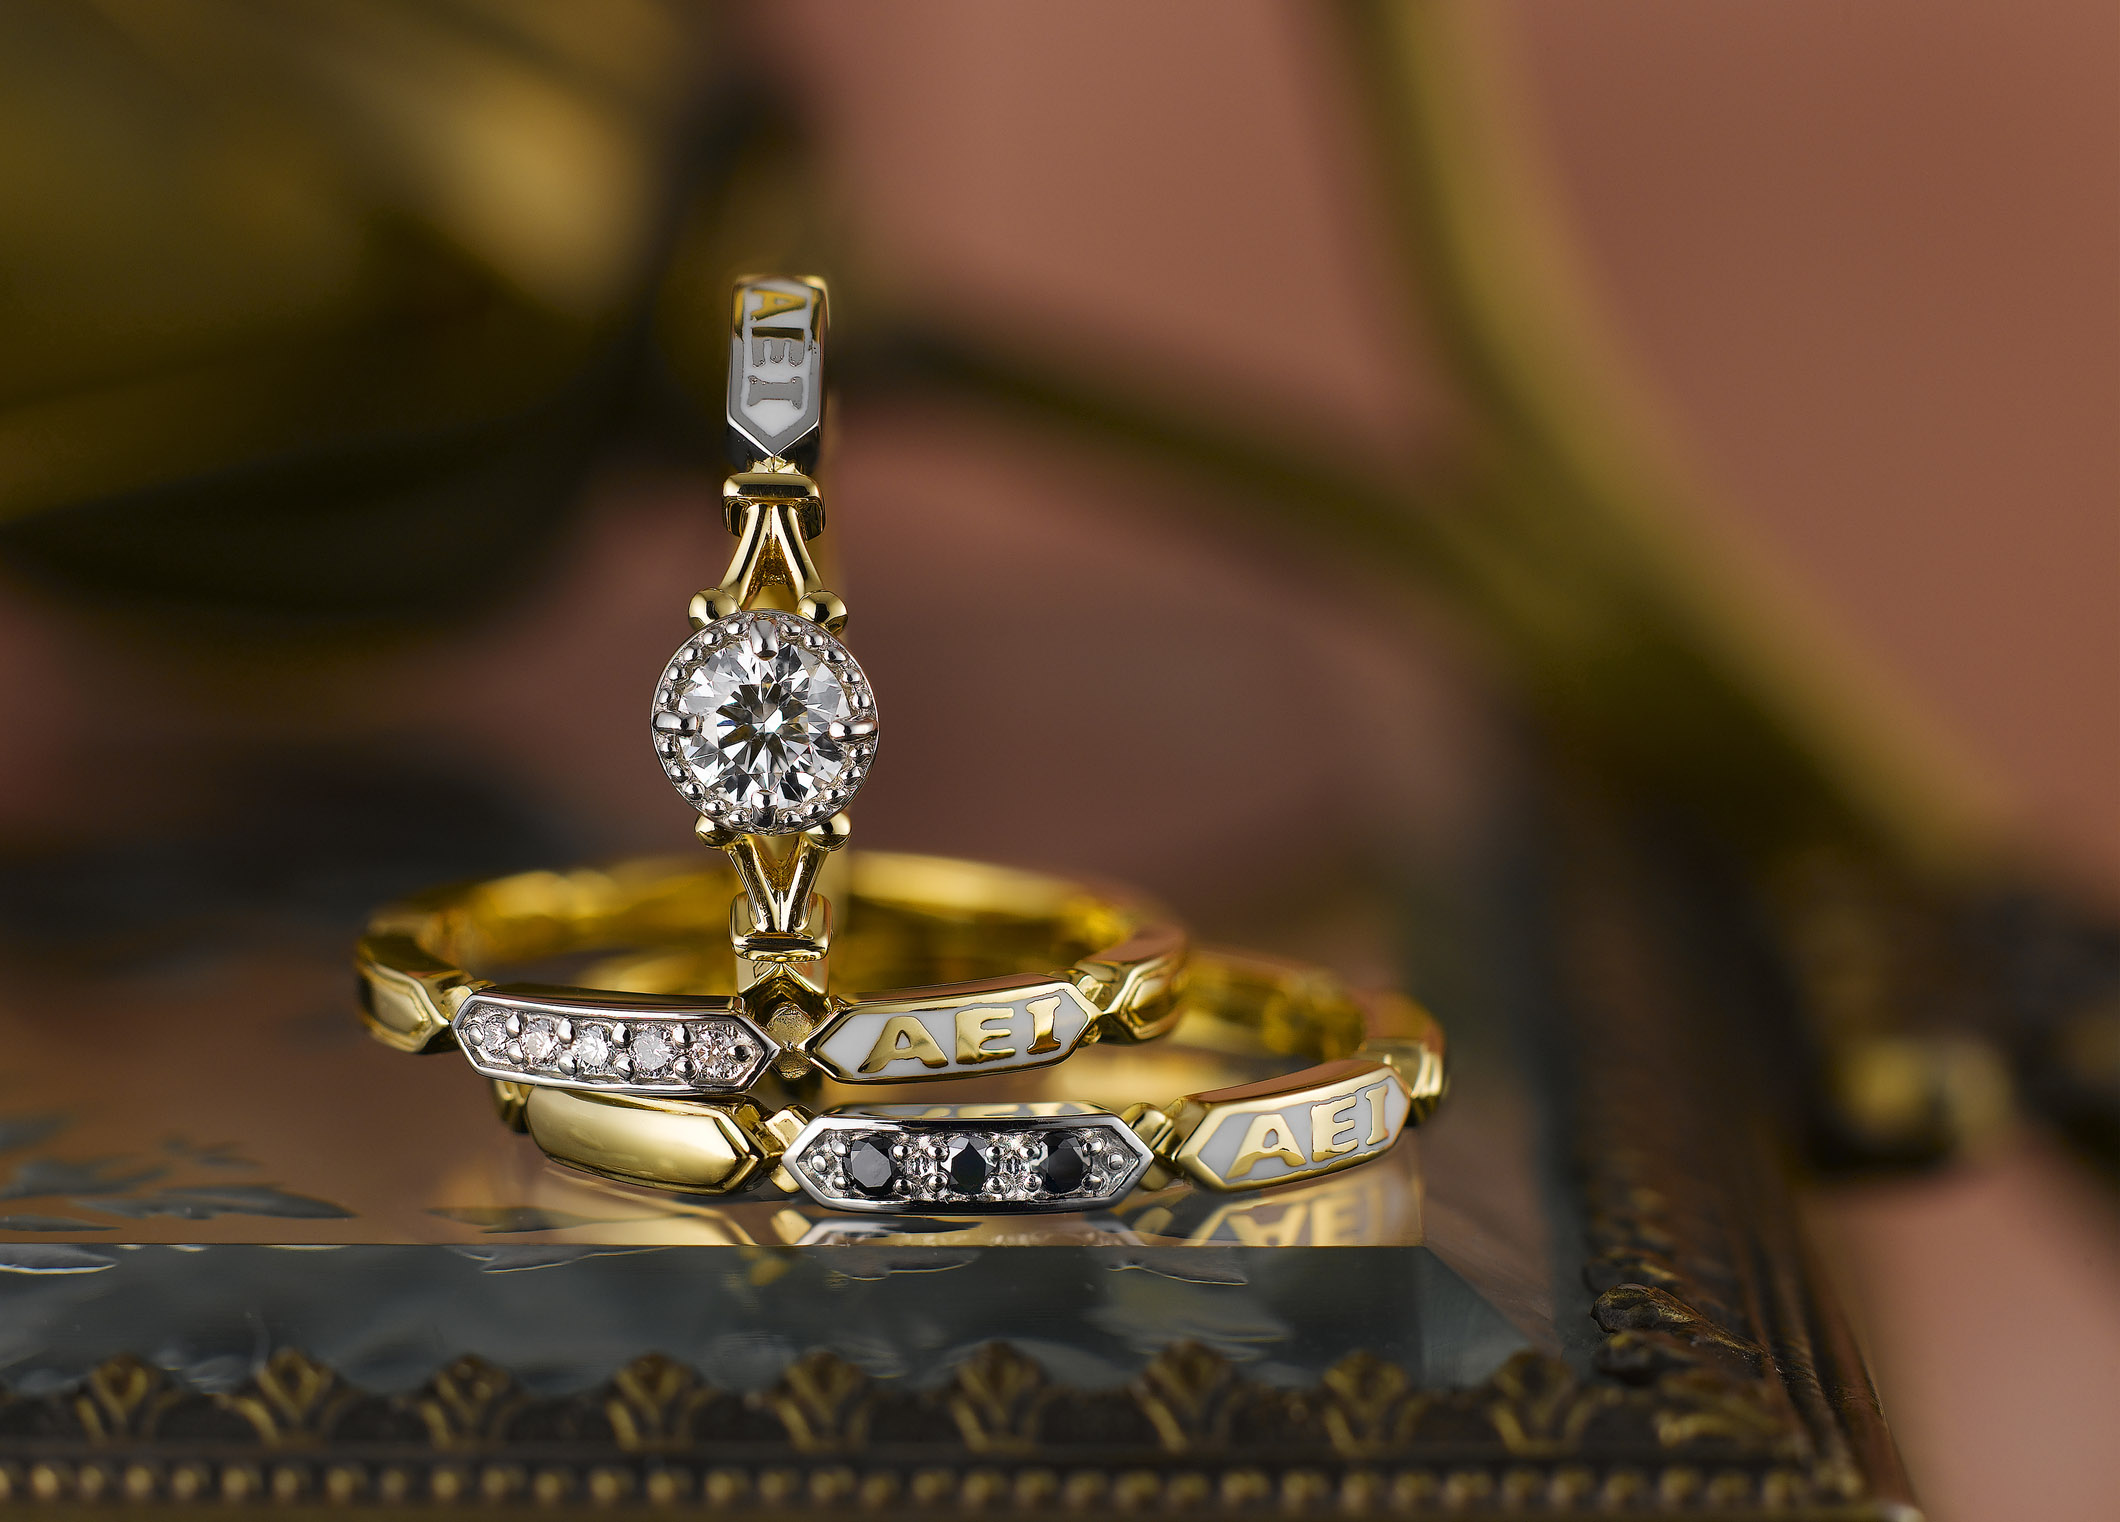 静岡市 おしゃれ女子に人気のアンティーク調ブライダルリングとは Jewelry Story ジュエリーストーリー ブライダル情報 婚約指輪 結婚 指輪 結婚式場情報サイト